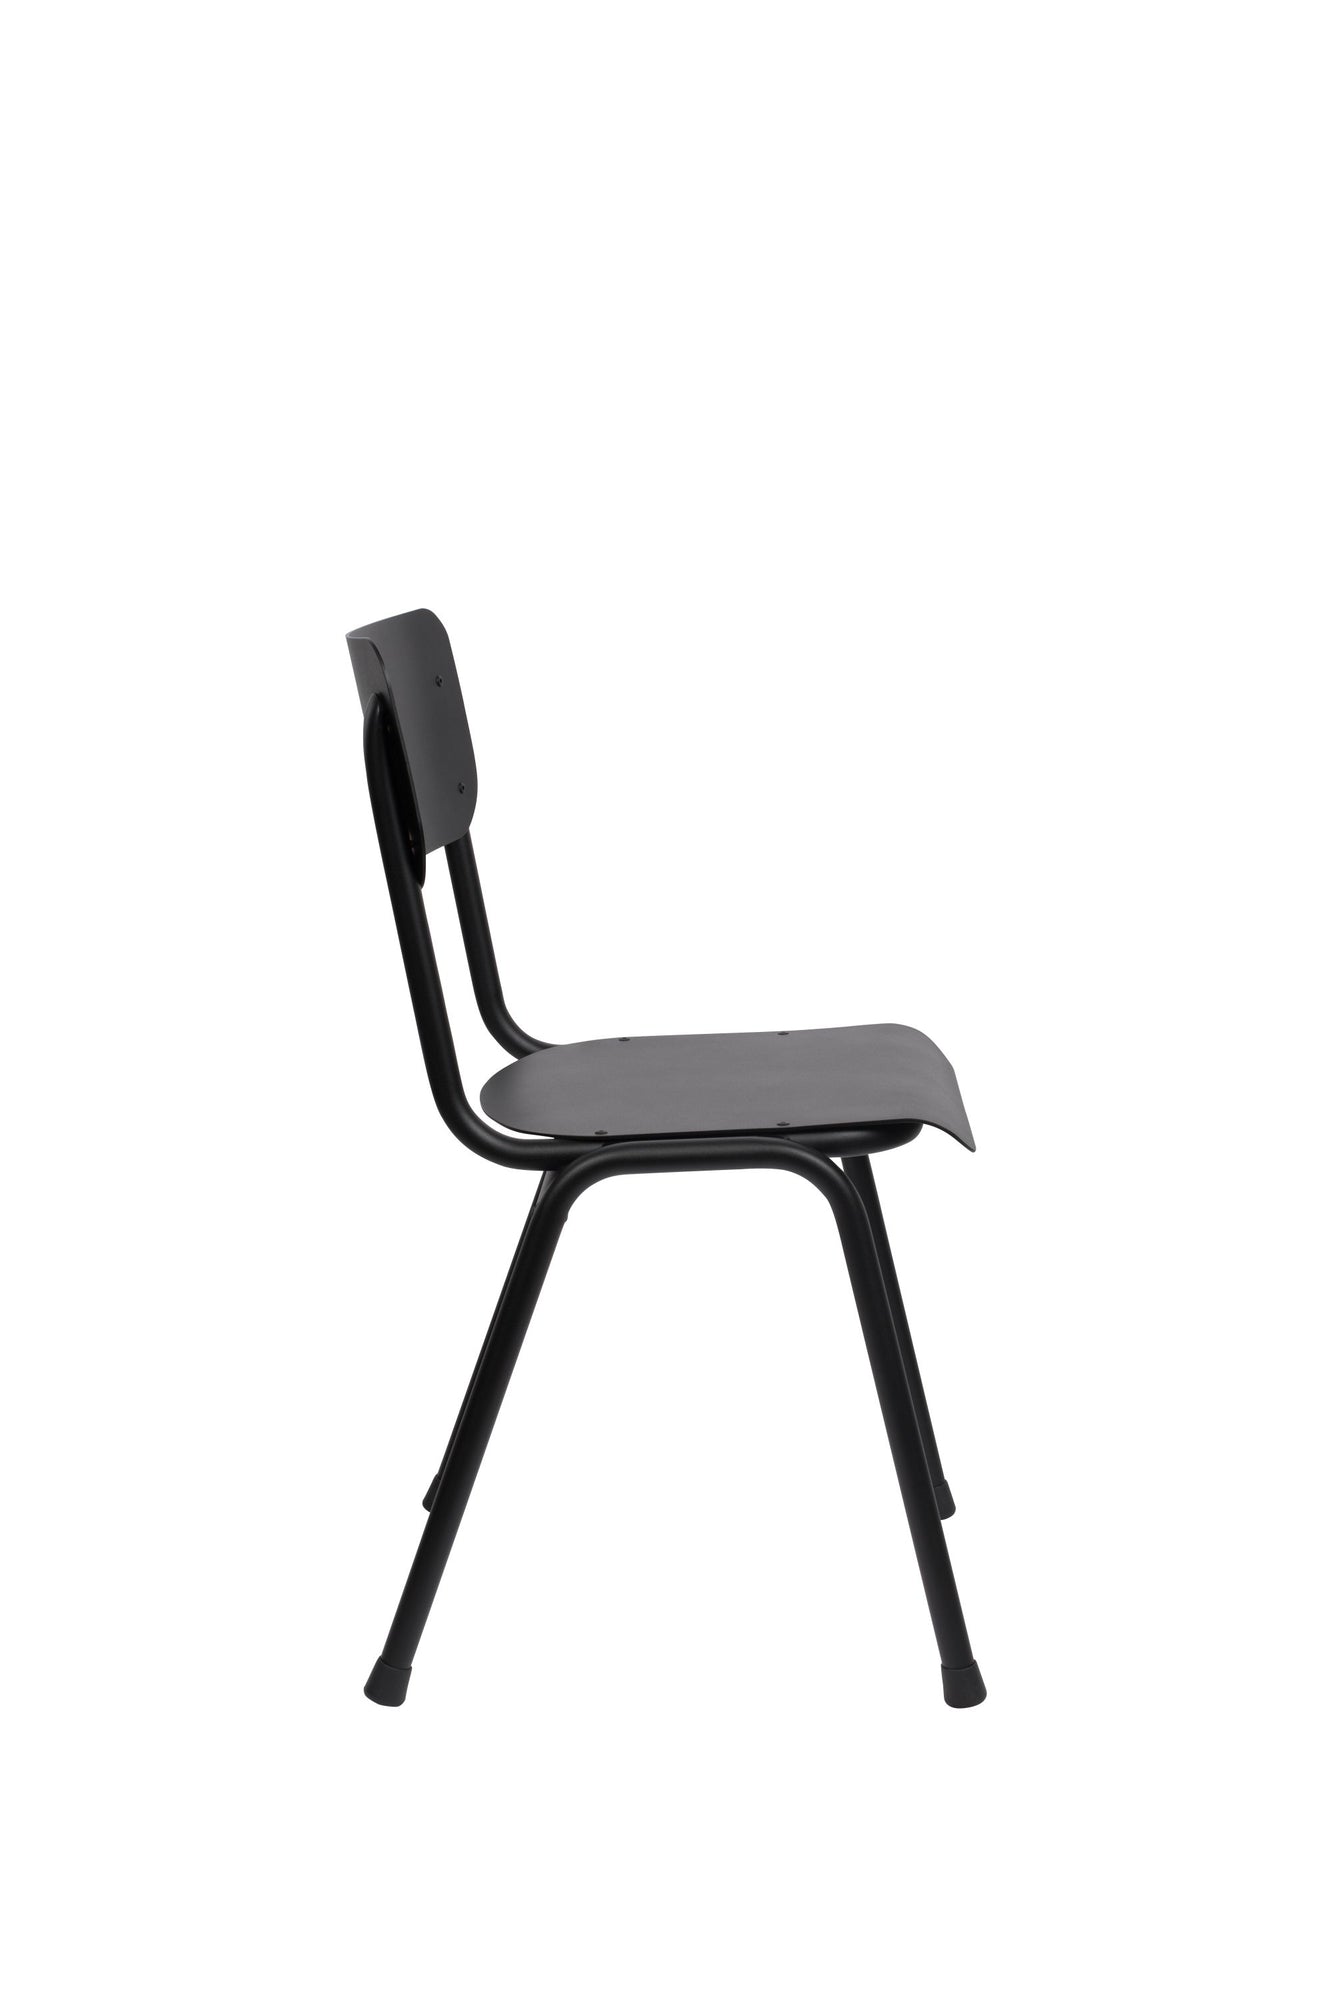 Zuiver Back School stoel outdoor black – HelloChair